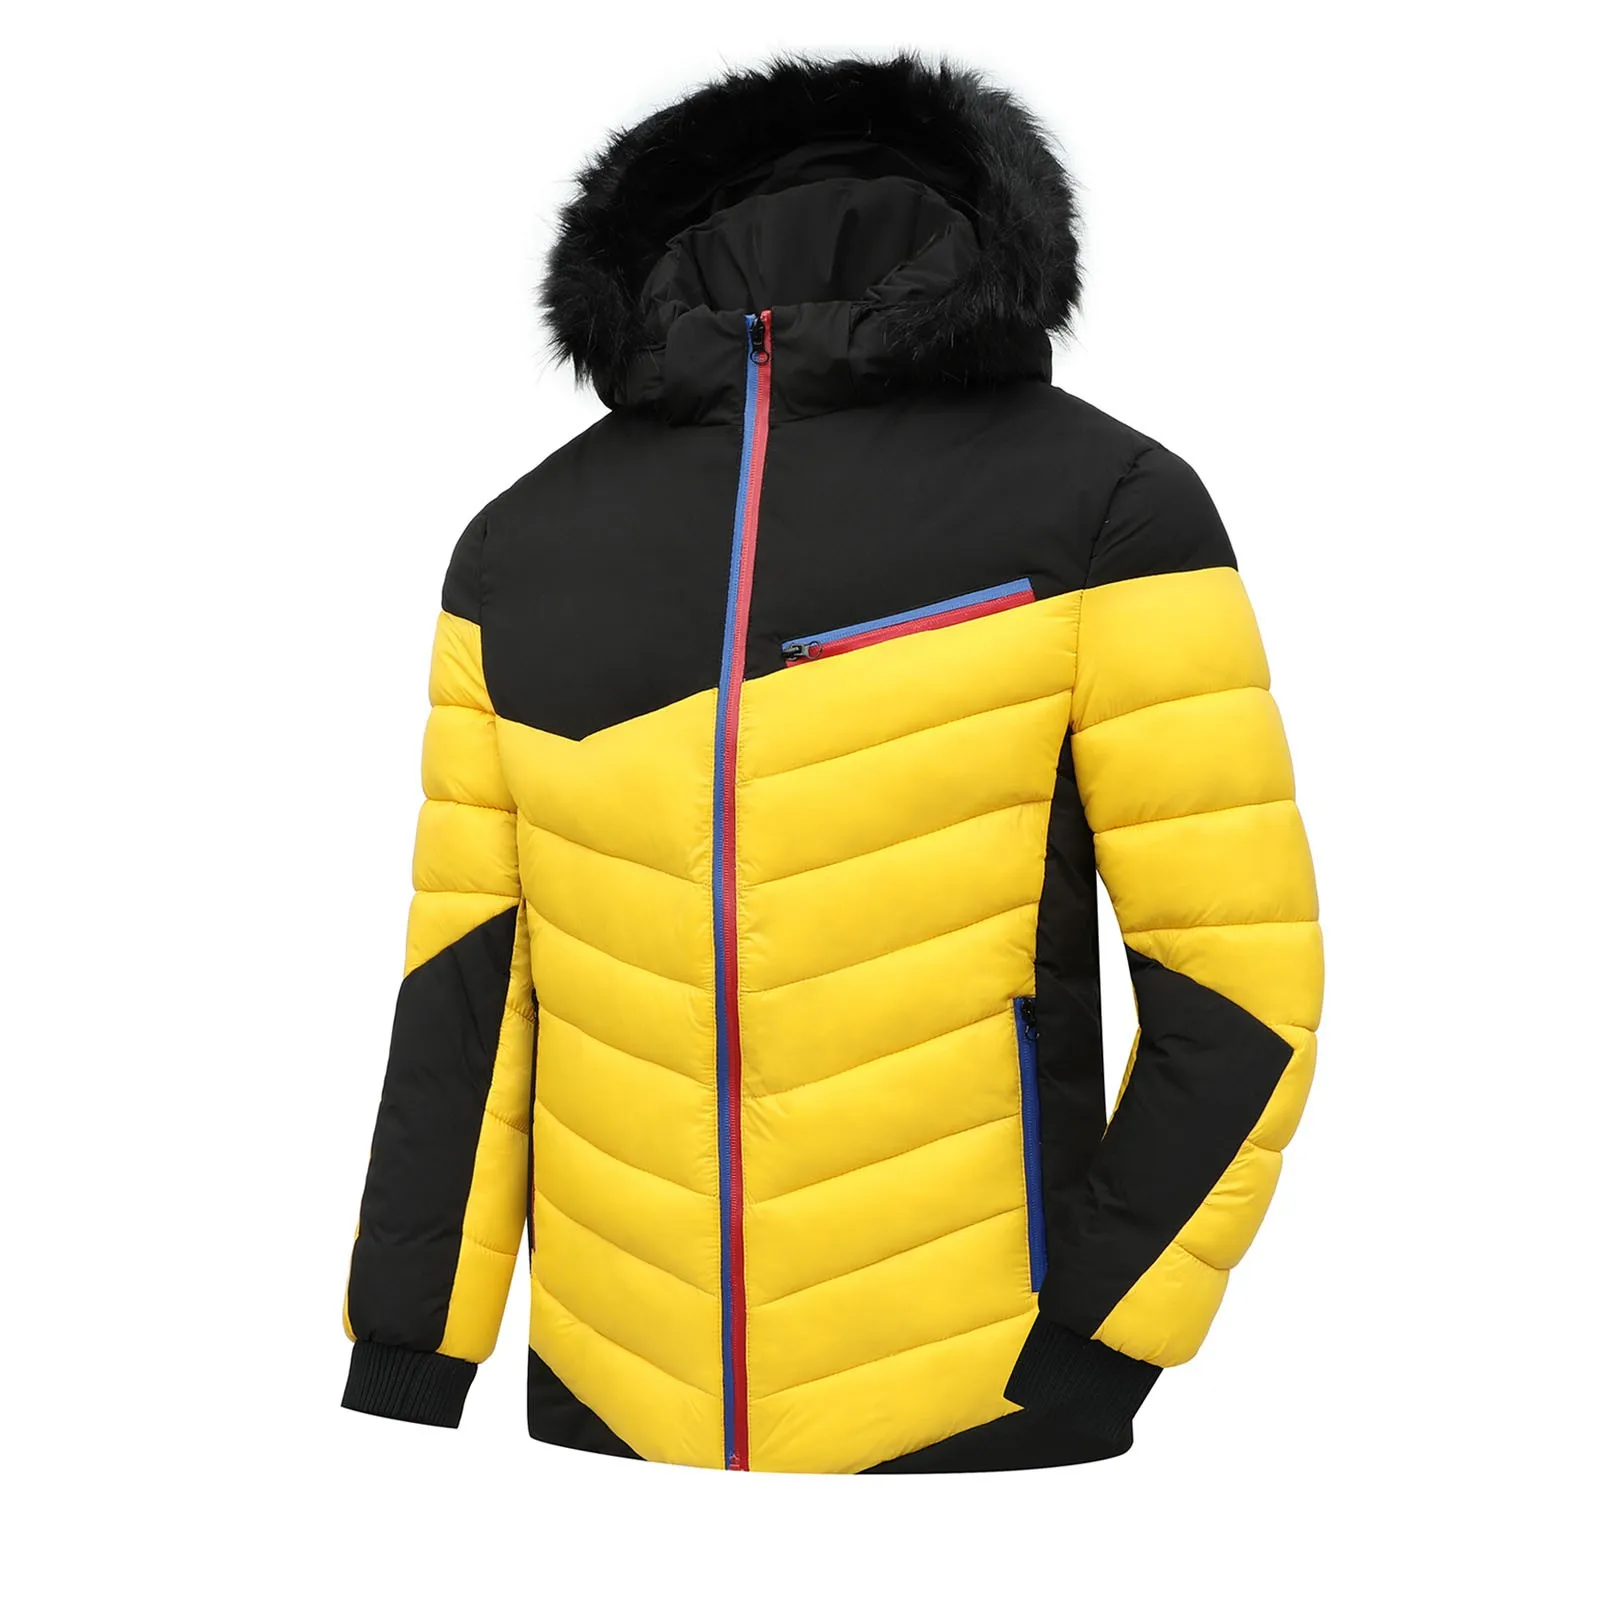 

Мужское утепленное пальто, теплая зимняя ветрозащитная куртка на молнии со съемным капюшоном и искусственной отделкой, с карманами на молнии